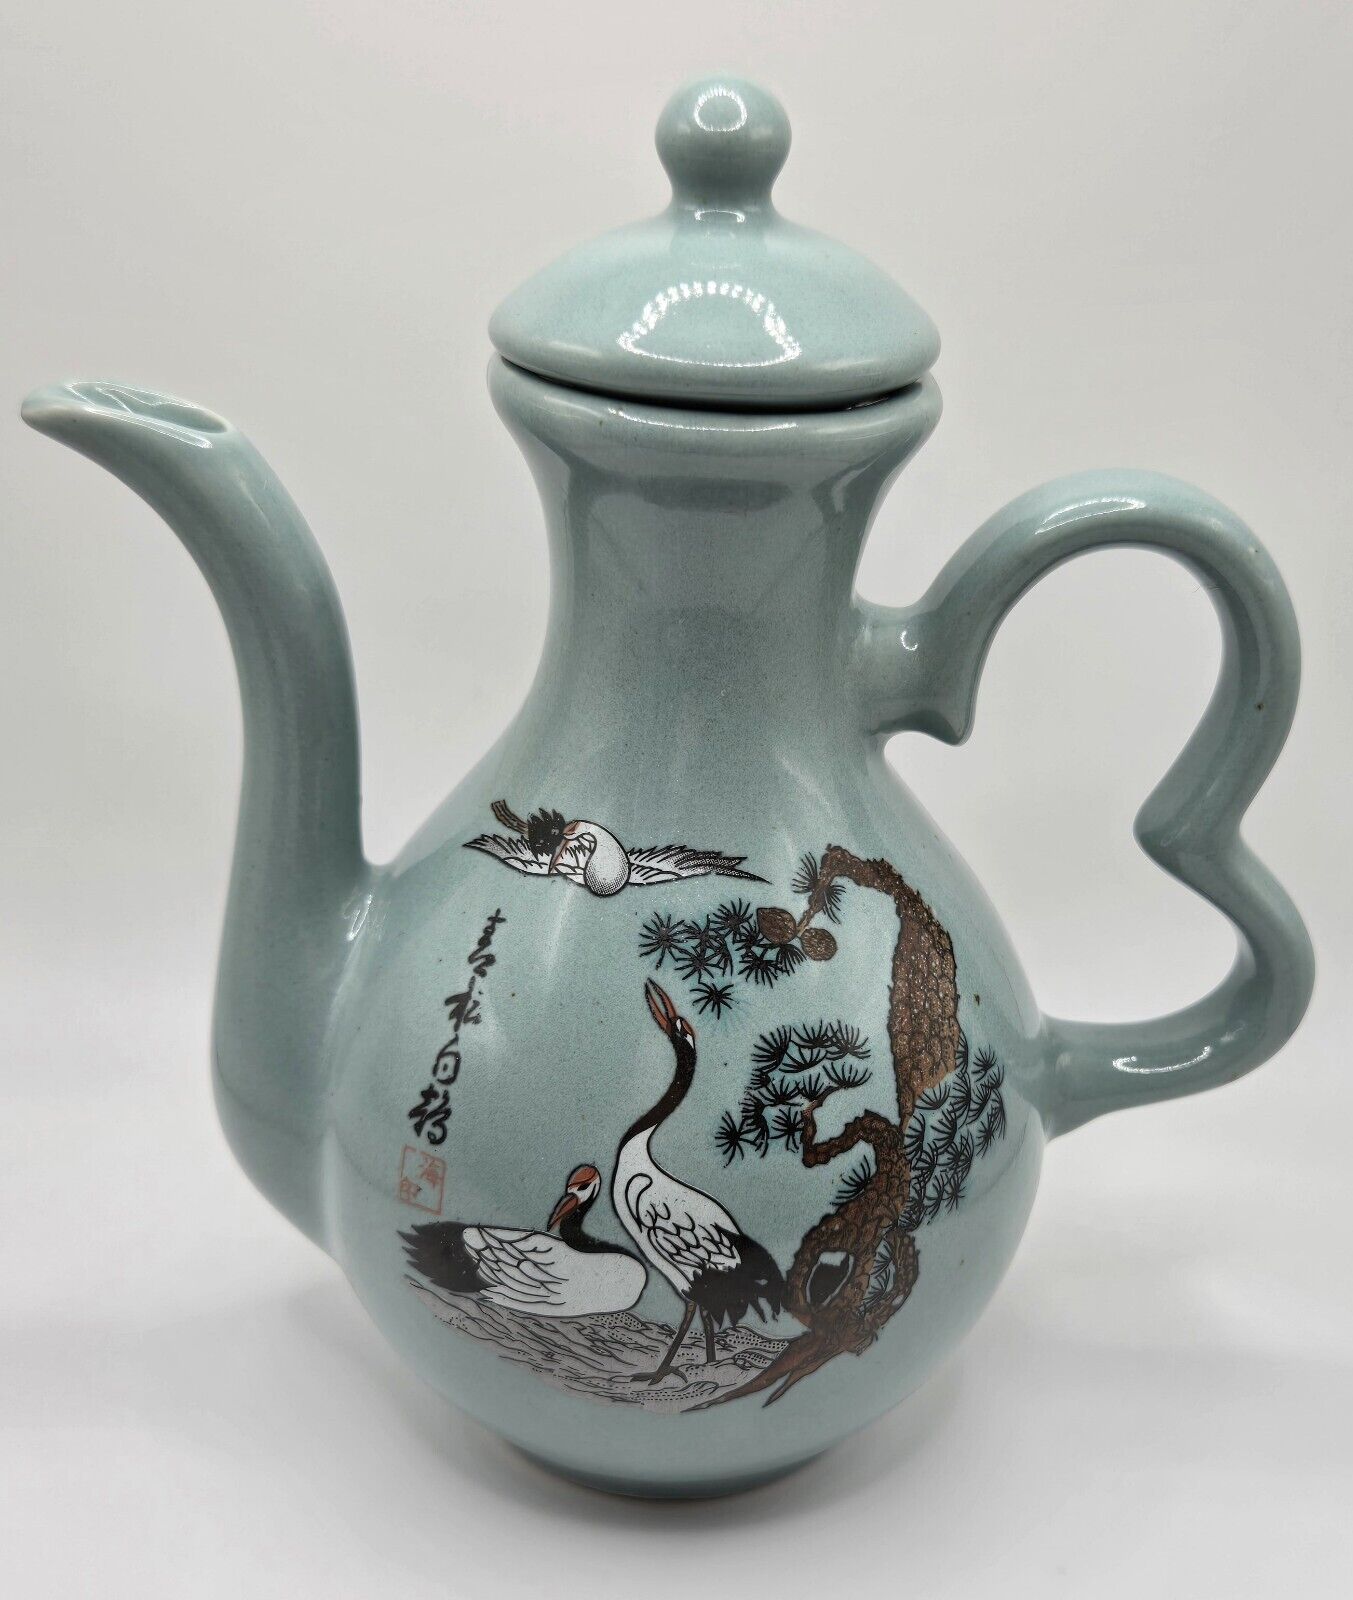  Japanese Ceramic Teapot Crane Heron Birds Motif Celadon Green 7.0”